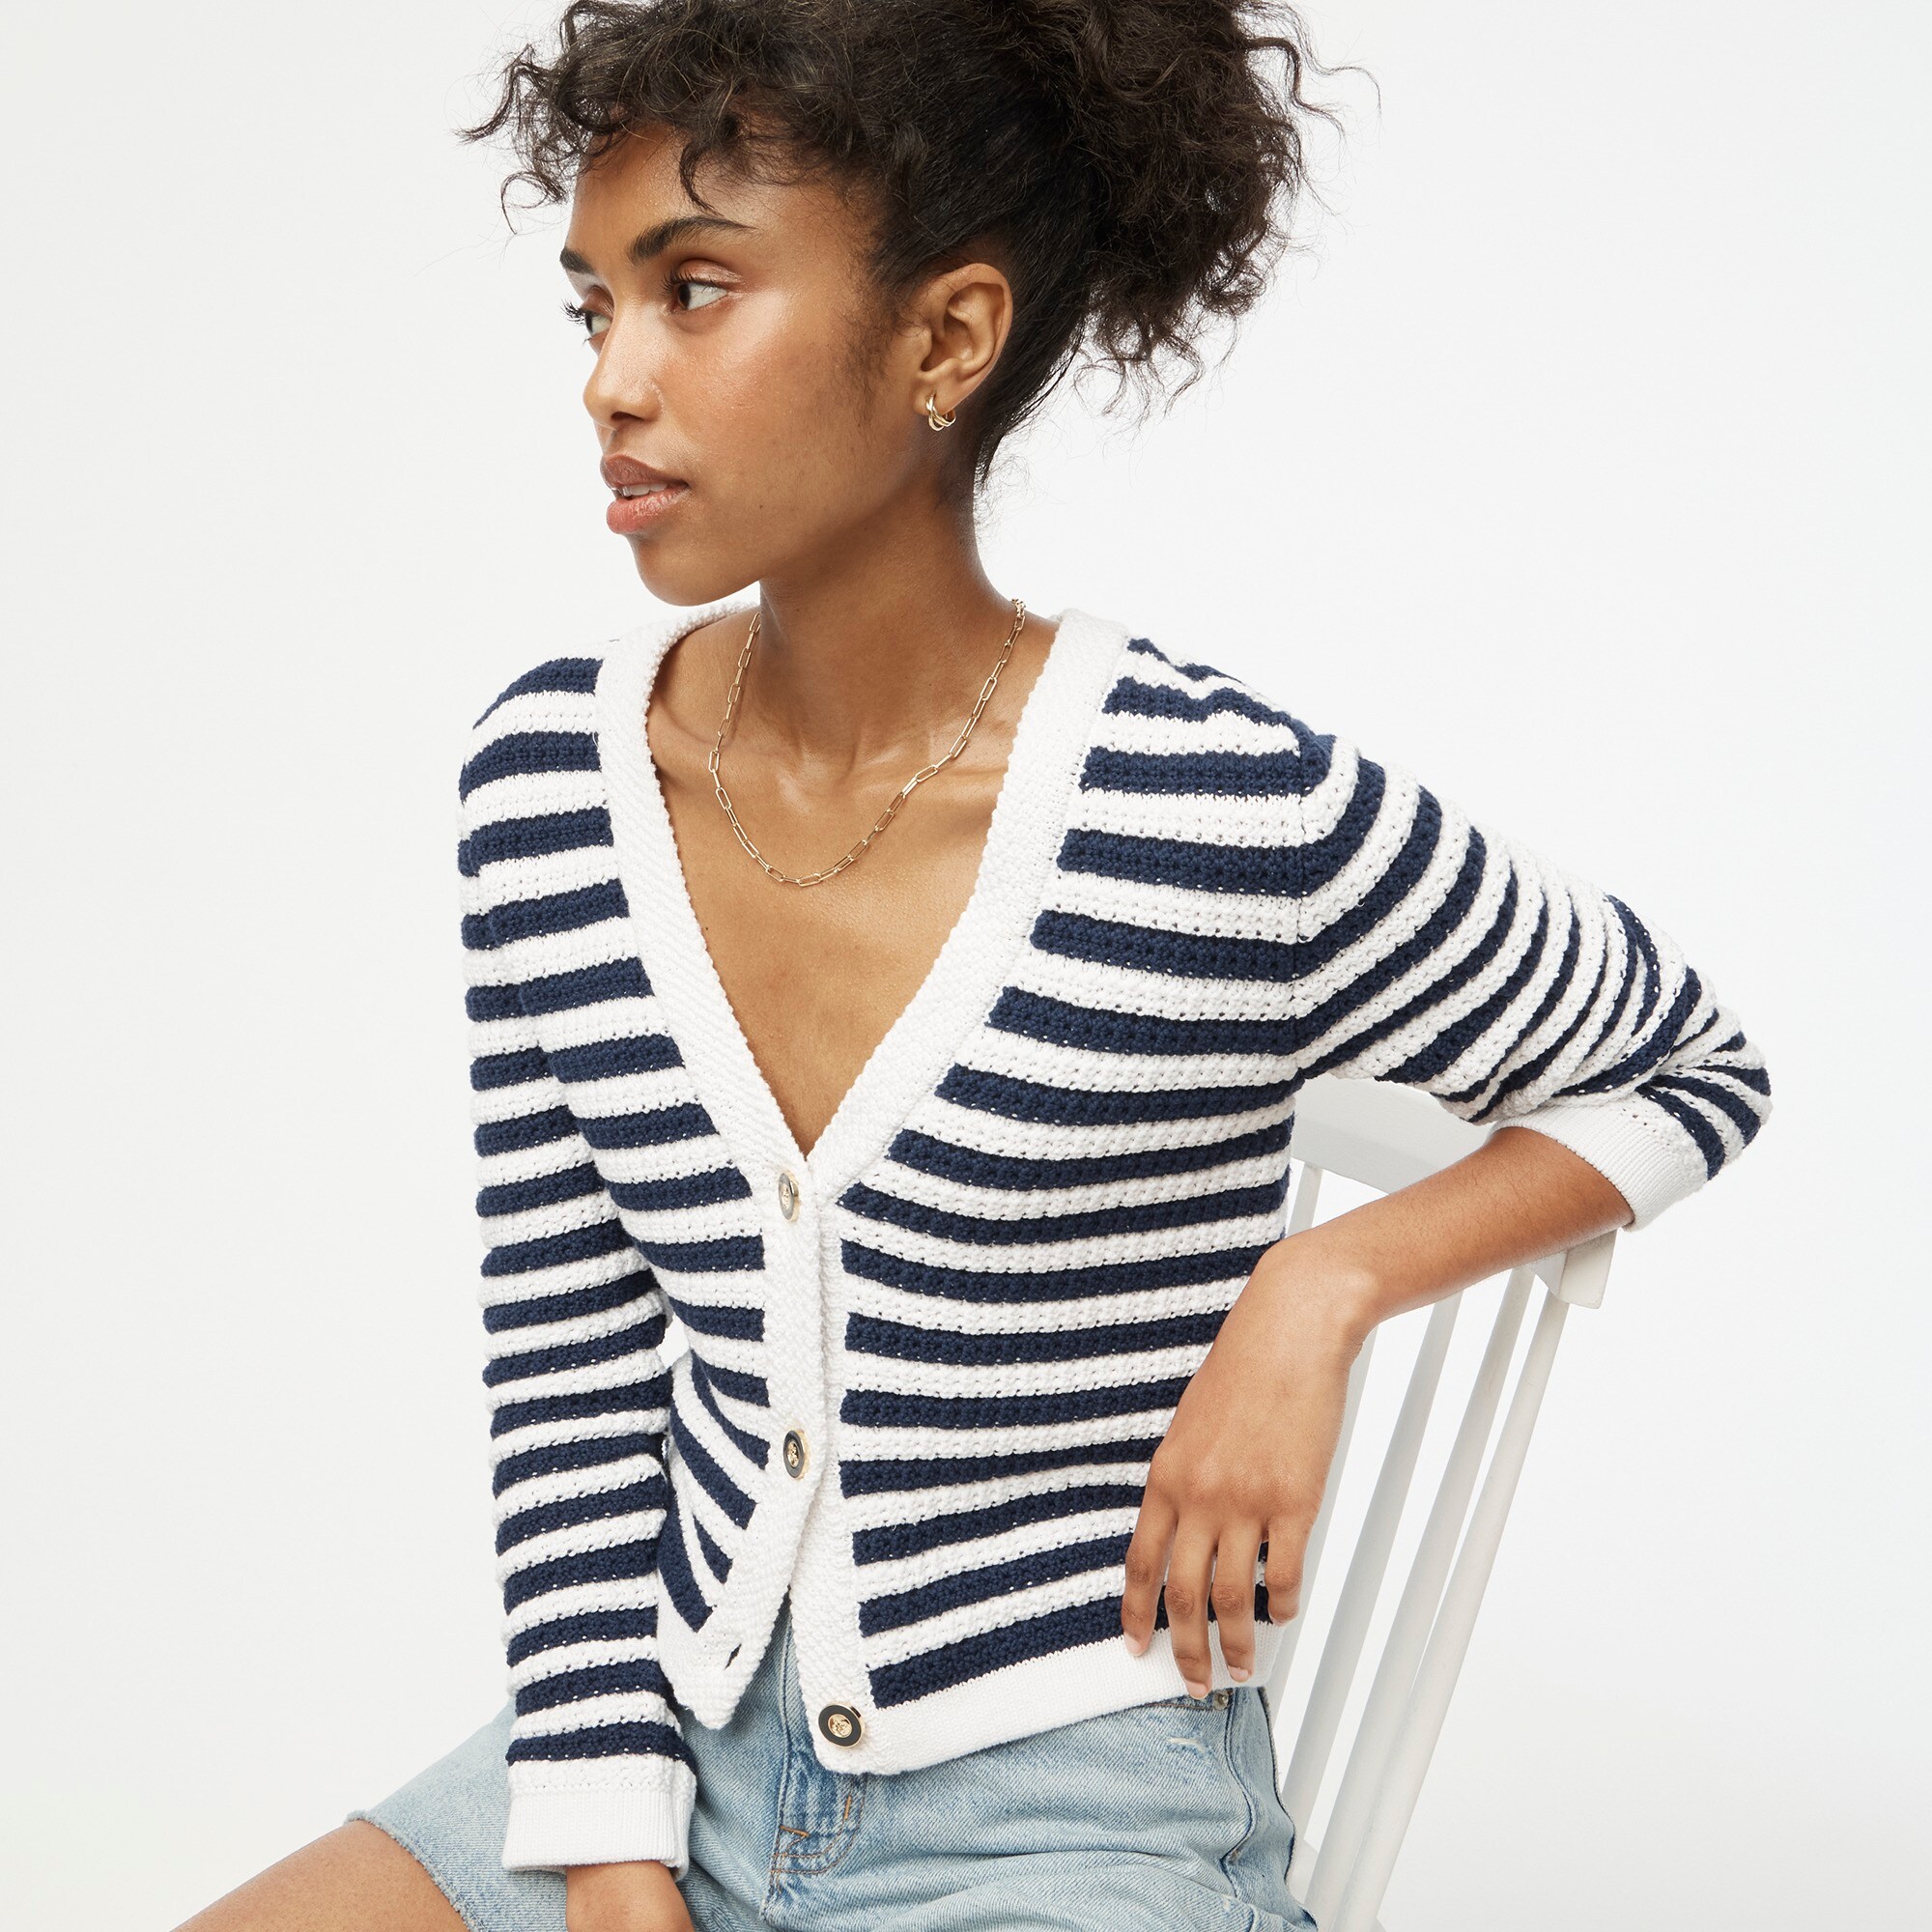  Striped knit V-neck cardigan sweater